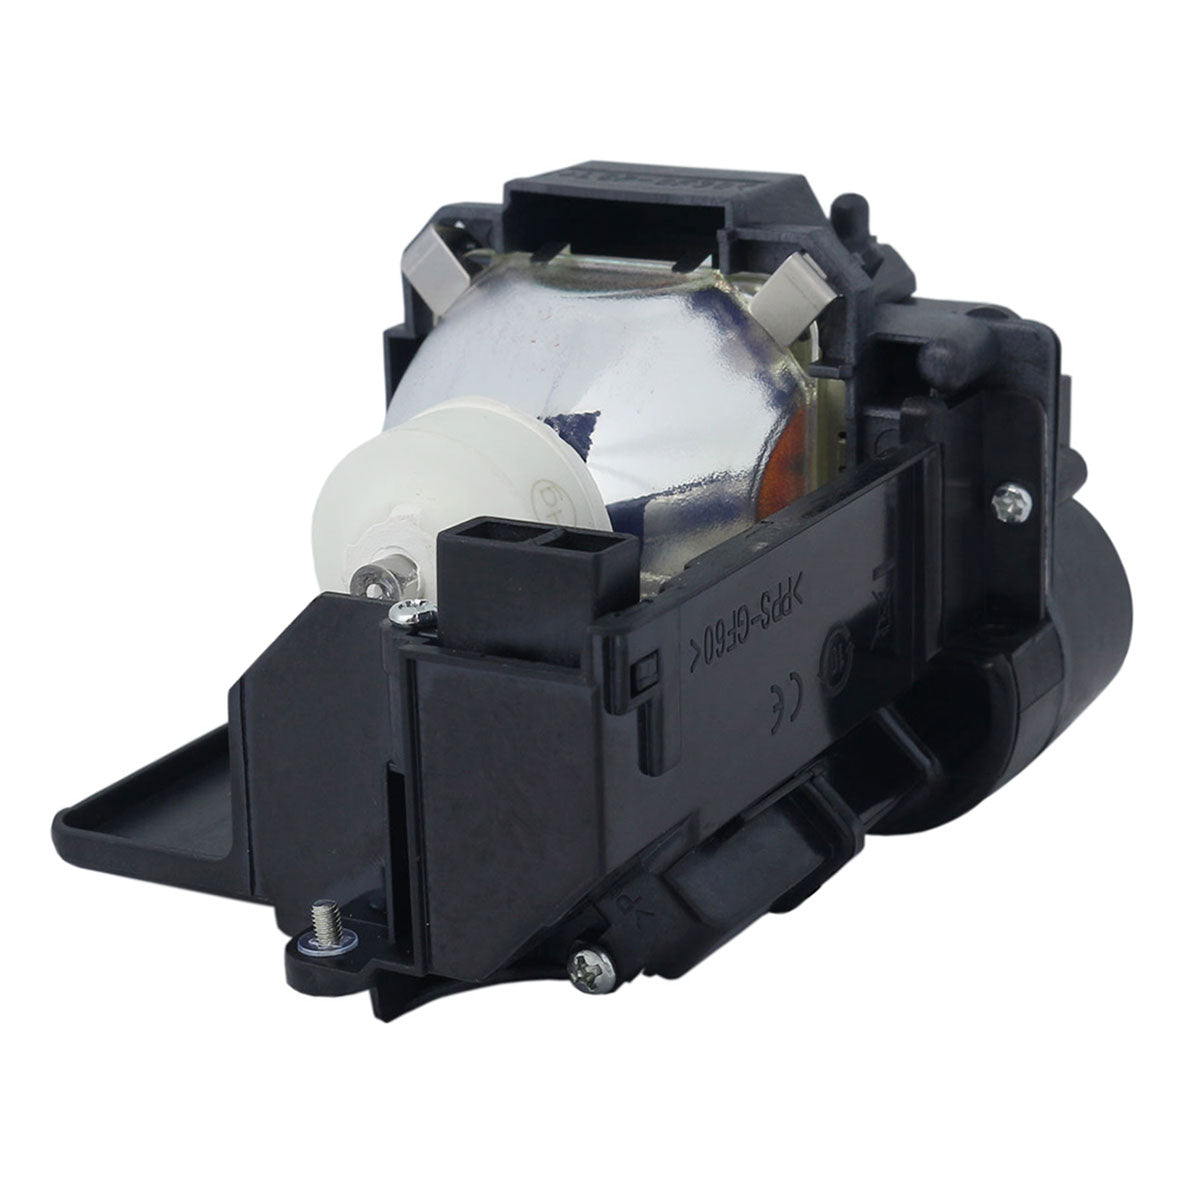 Dukane 456-6136 Ushio Projector Lamp Module